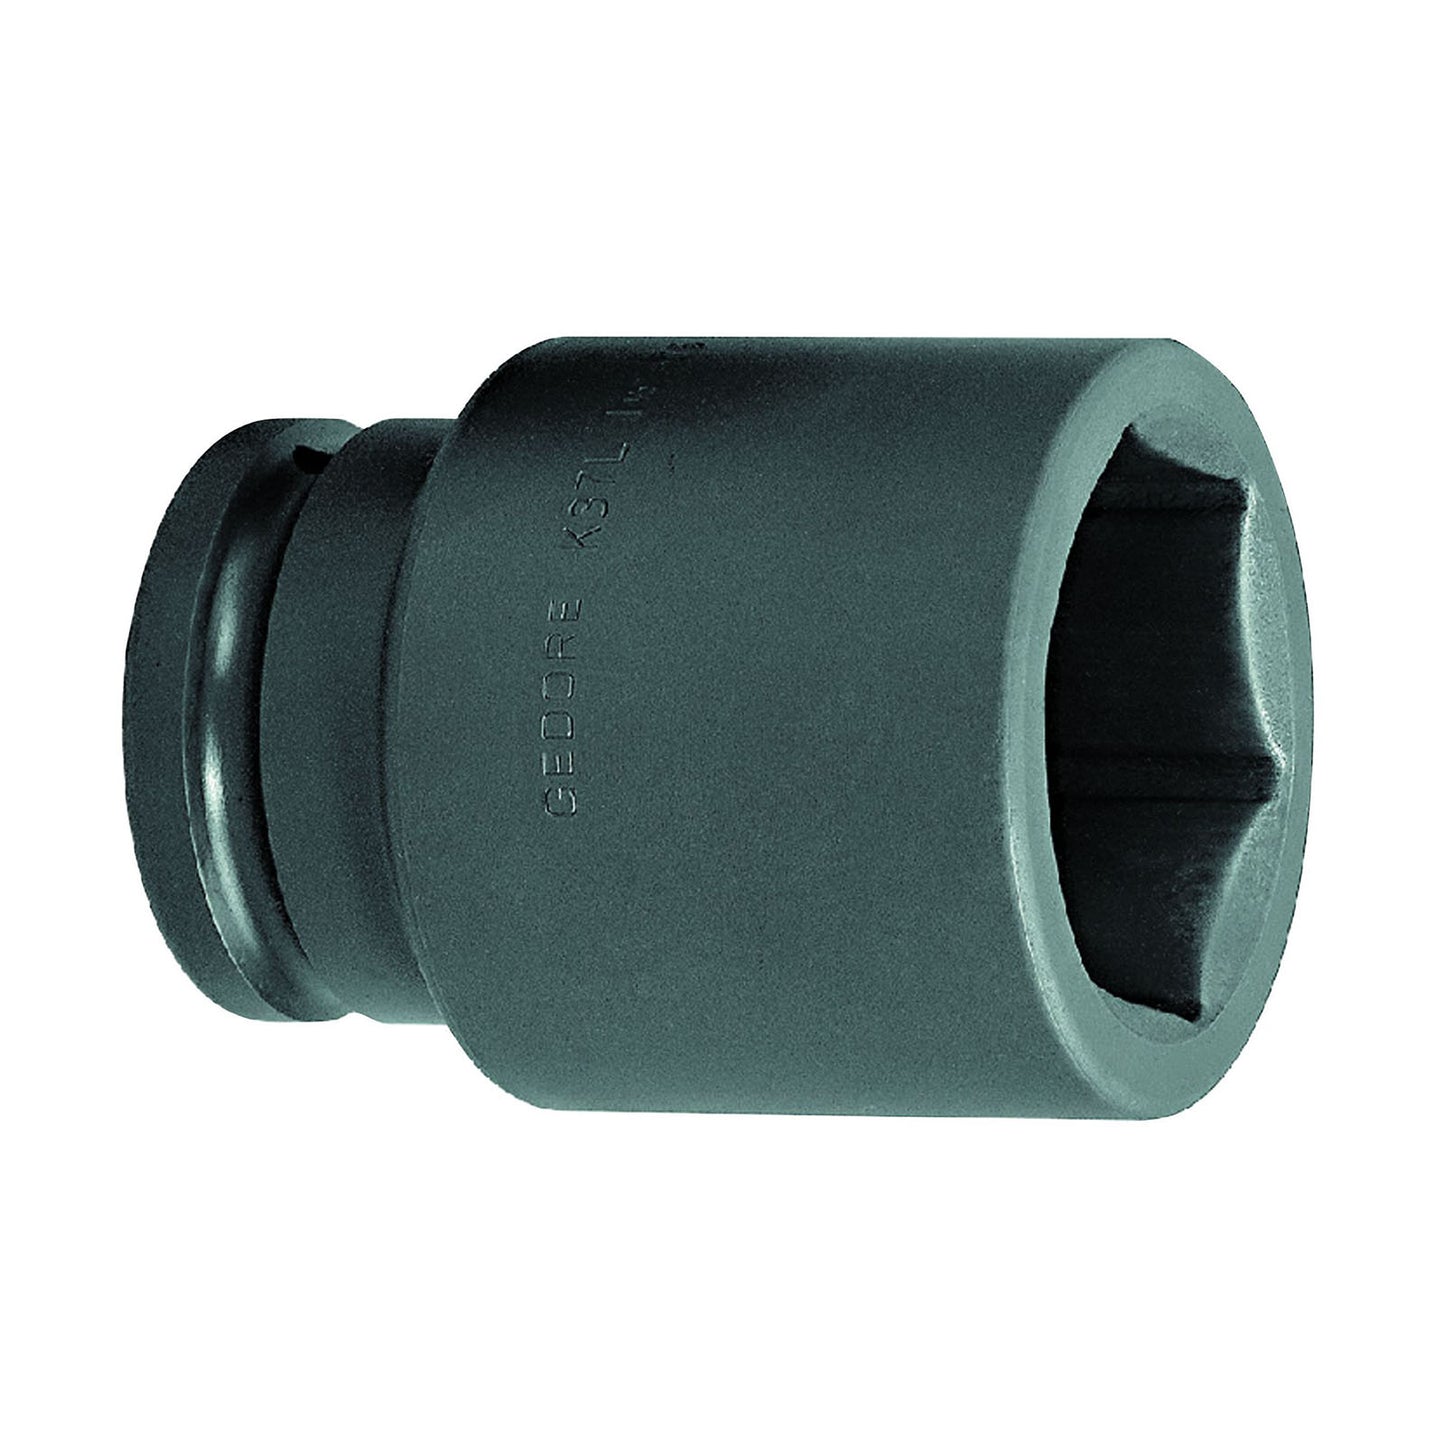 GEDORE K 37 L 41 - XL Impact Socket 1.1/2", 41 mm (6330110) 